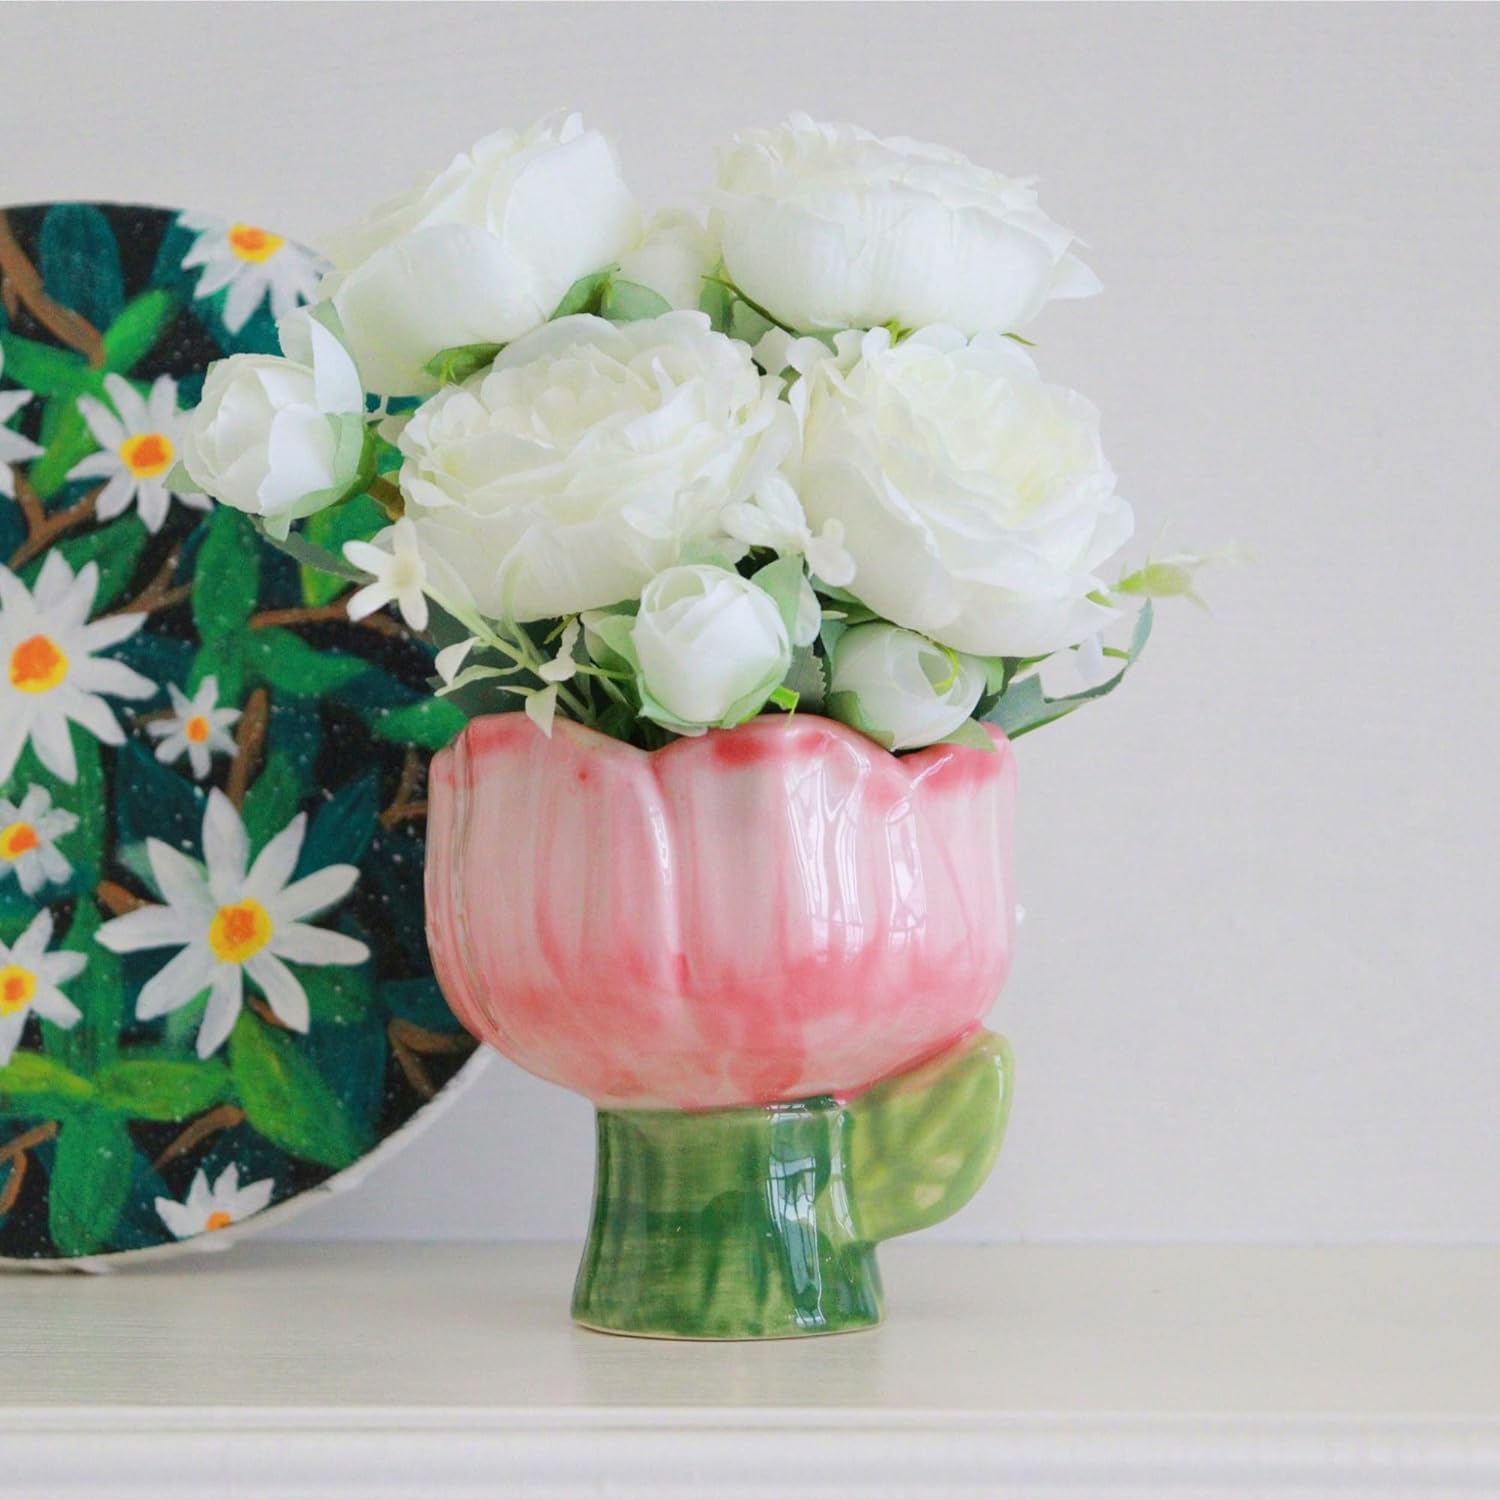 【最佳裝飾】JSPYFITS 多功能陶瓷餐桌花瓶 $11.89